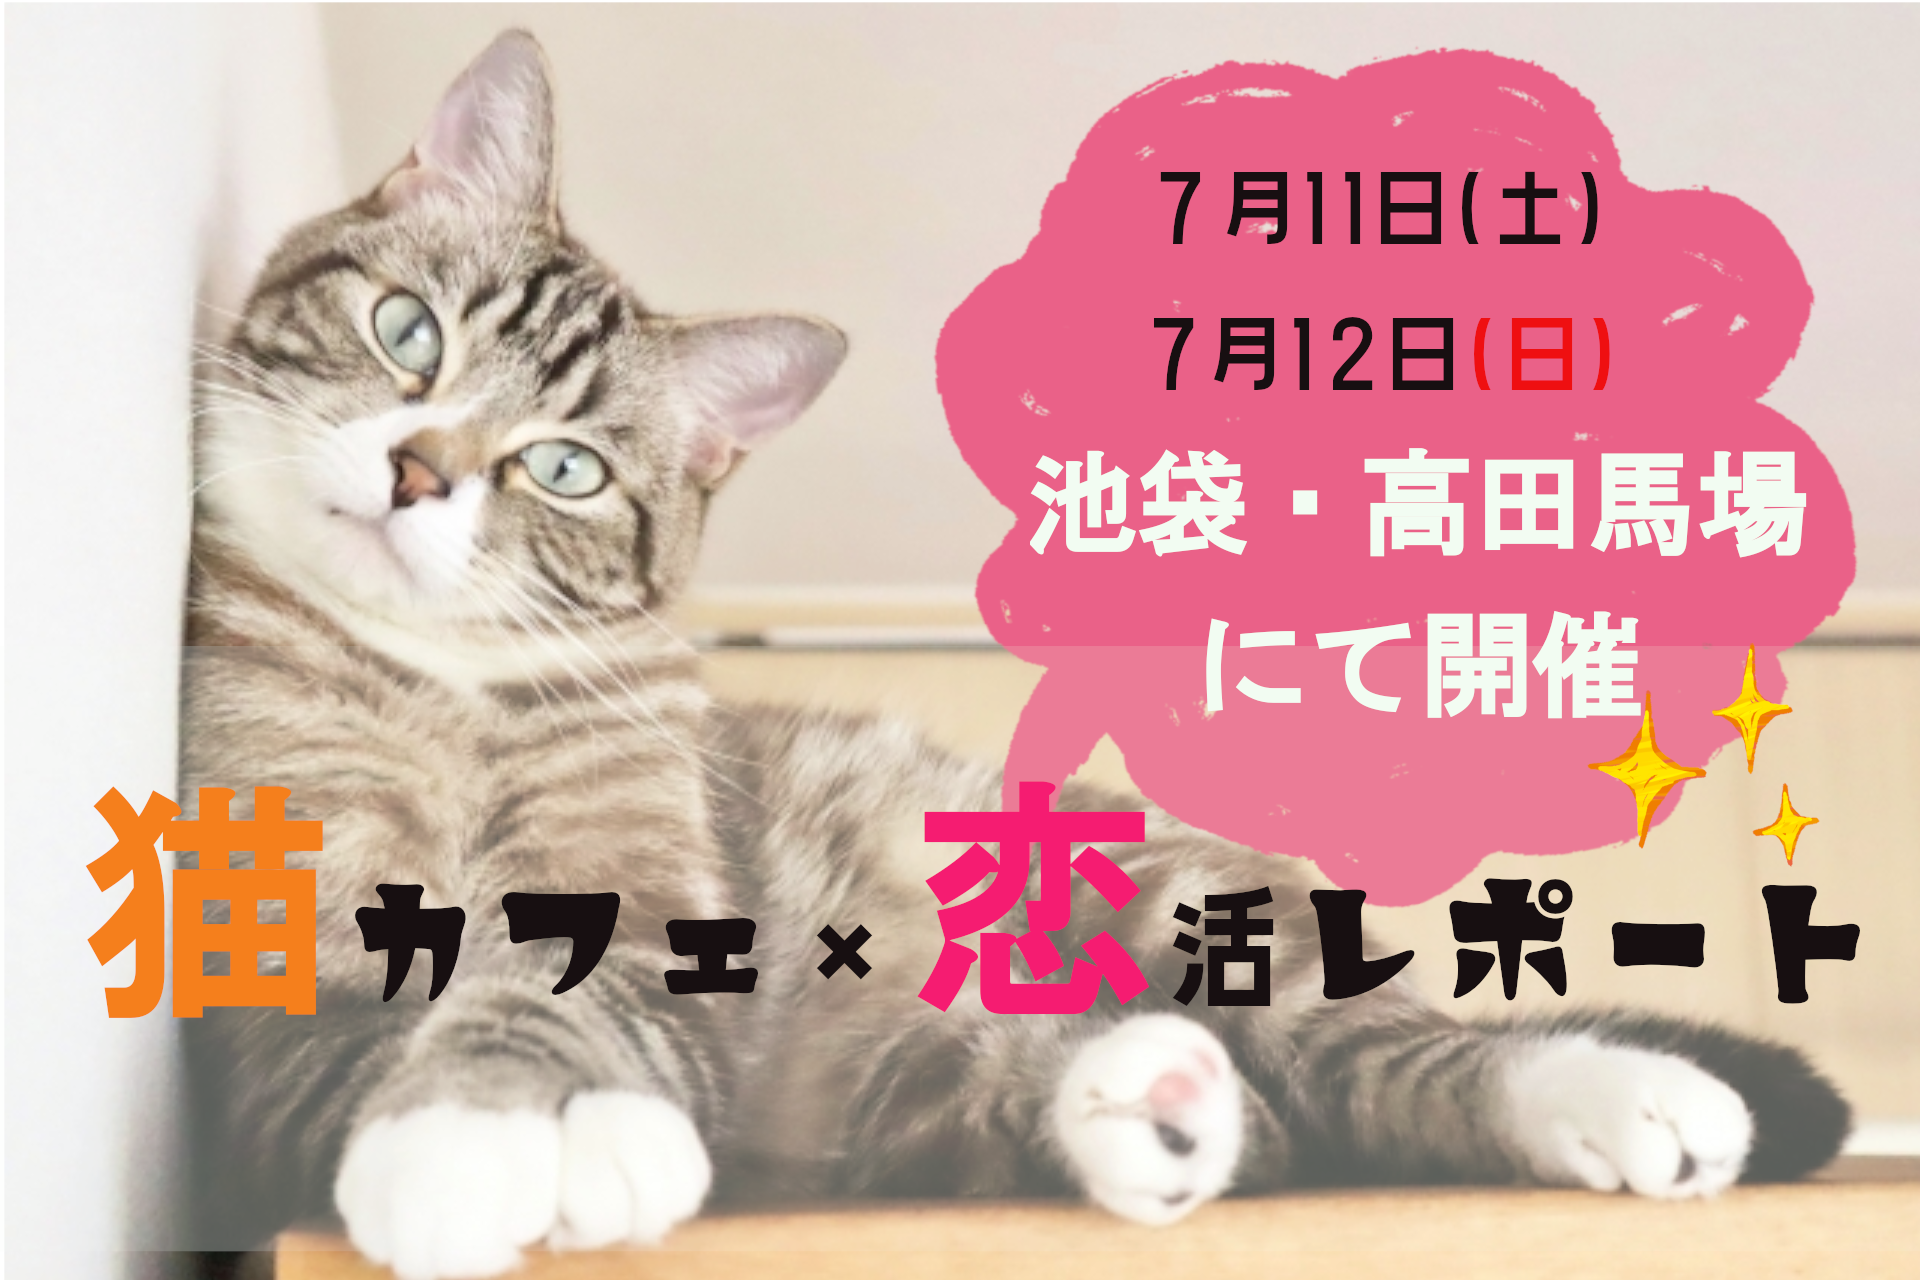 ７月11 土 ７月12日 日 高田馬場 池袋で開催 猫カフェ 恋活コン 公式 街コン 婚活パーティーなら街コンalice